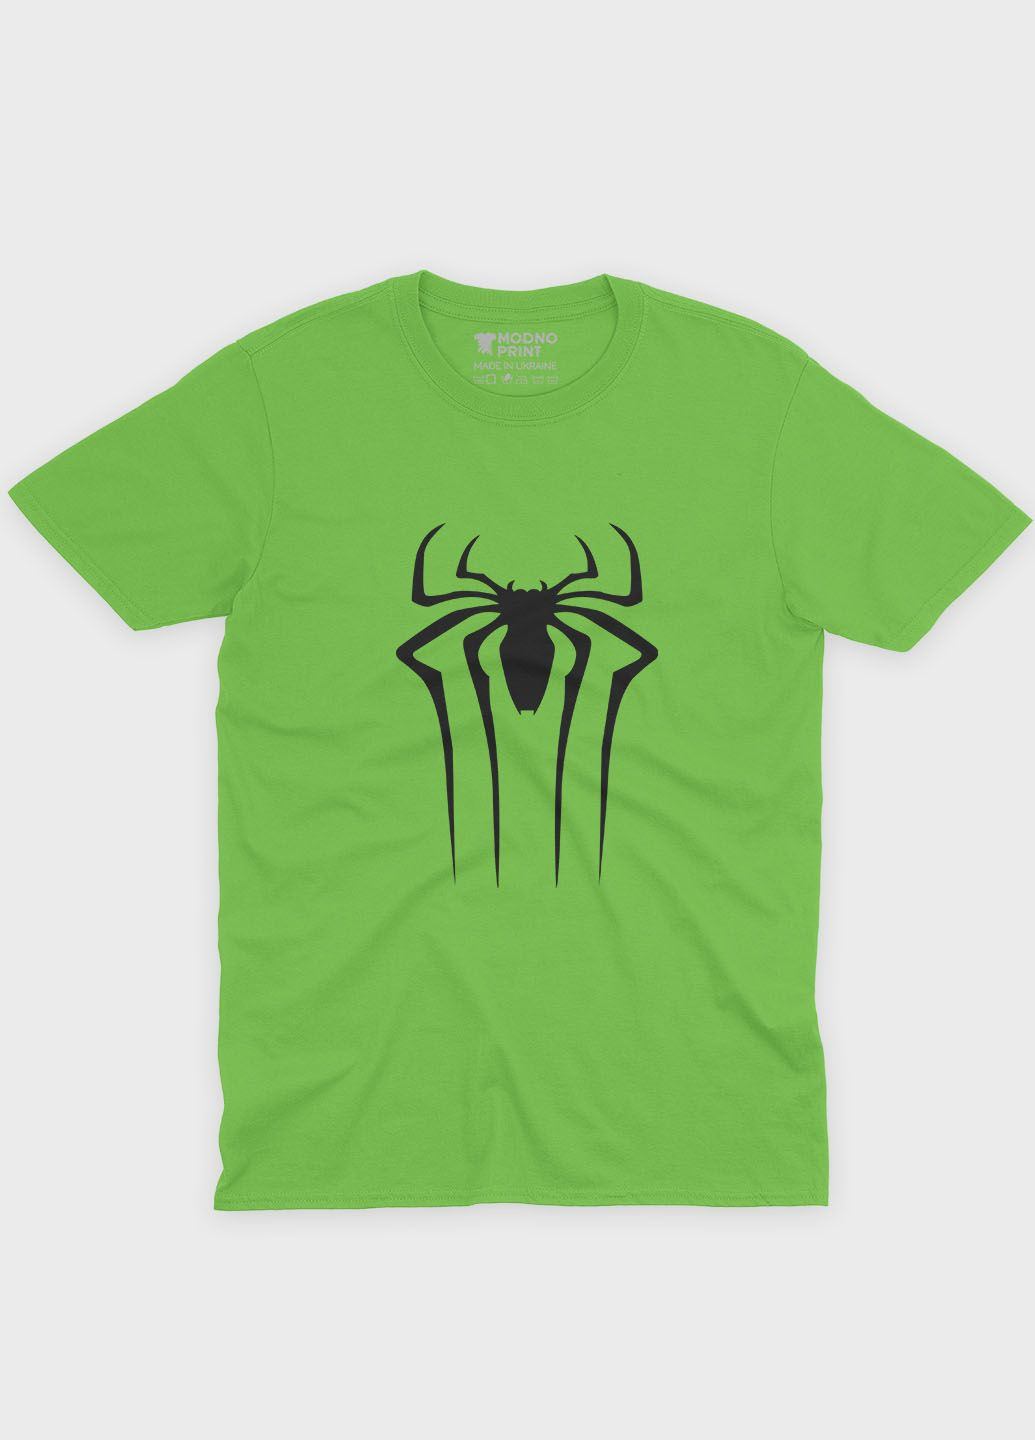 Салатовая демисезонная футболка для мальчика с принтом супергероя - человек-паук (ts001-1-kiw-006-014-107-b) Modno